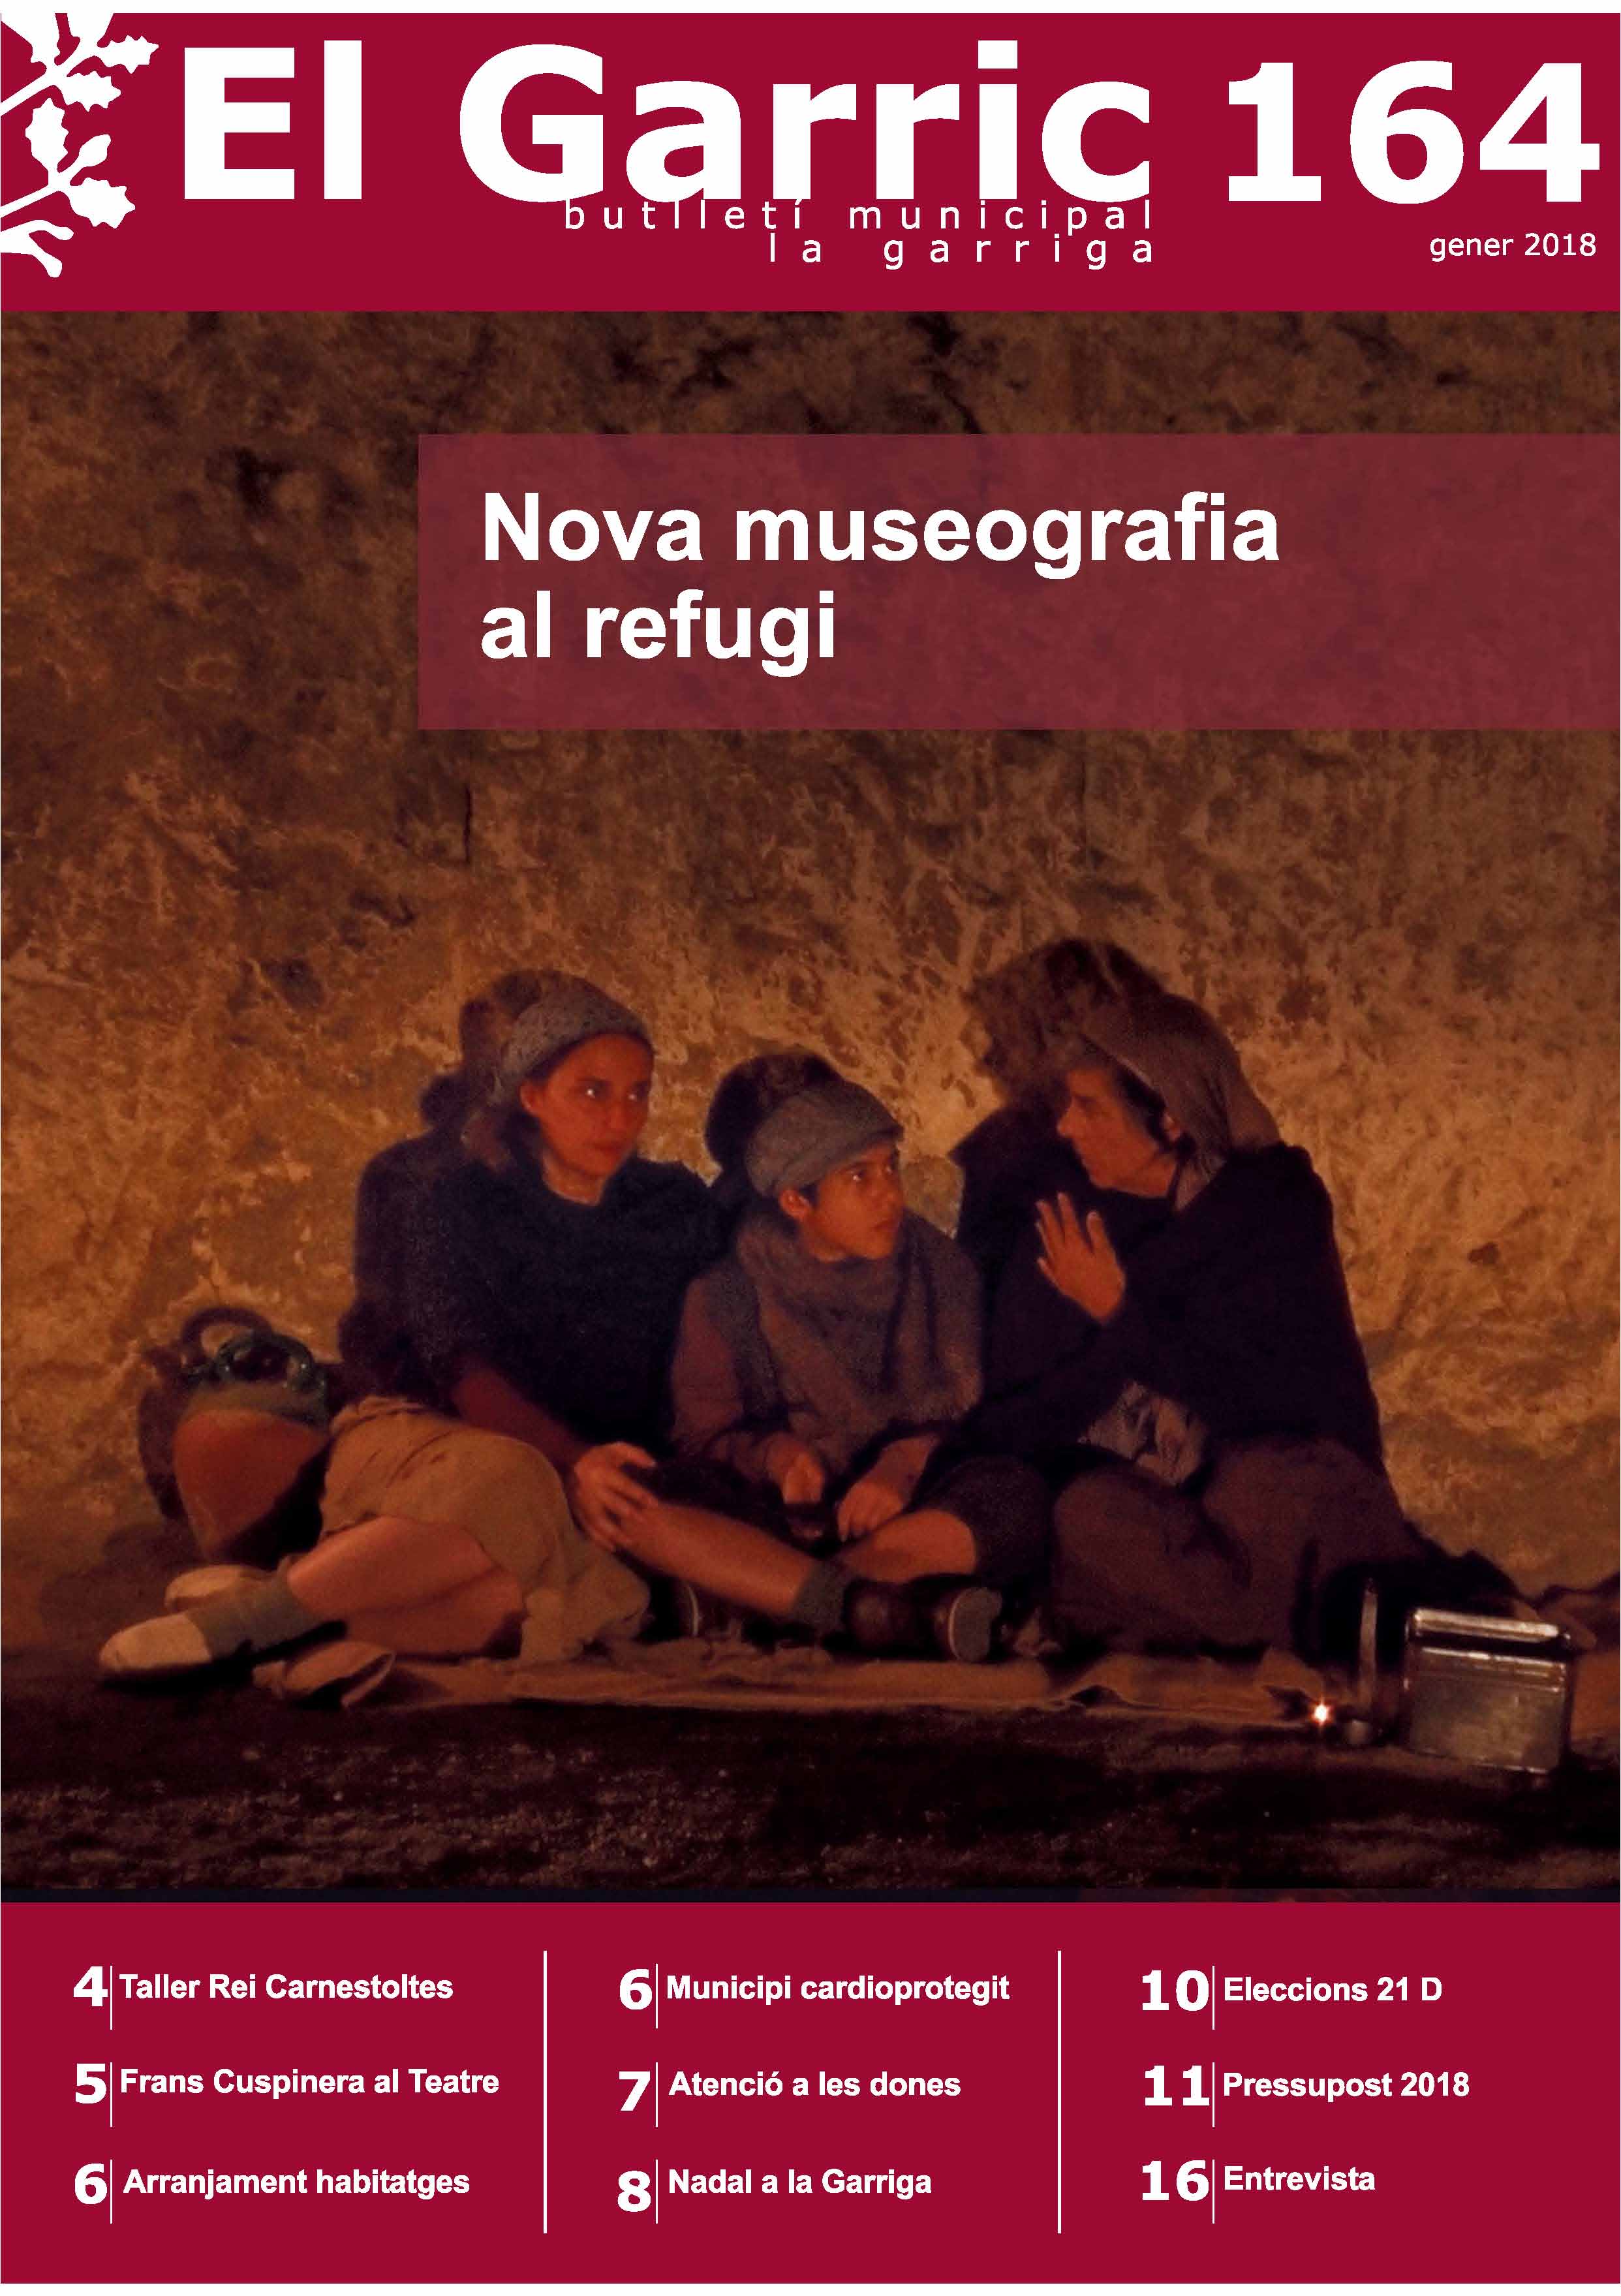 La nova museografia del refugi, portada del Garric 164